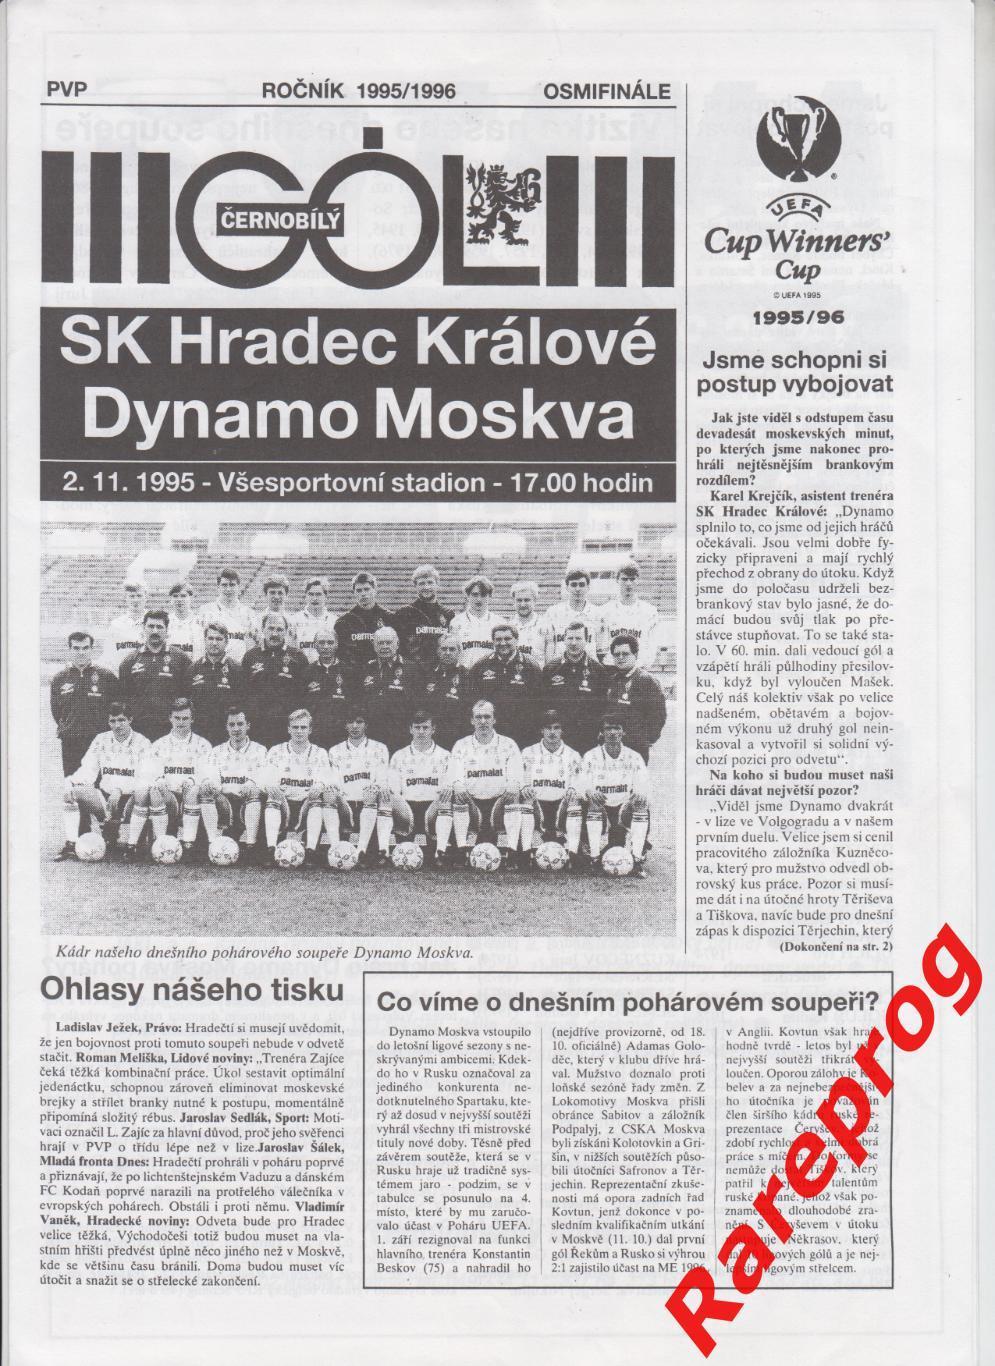 Градец Кралове Чехия - Динамо Москва 1995 кубок Кубков УЕФА